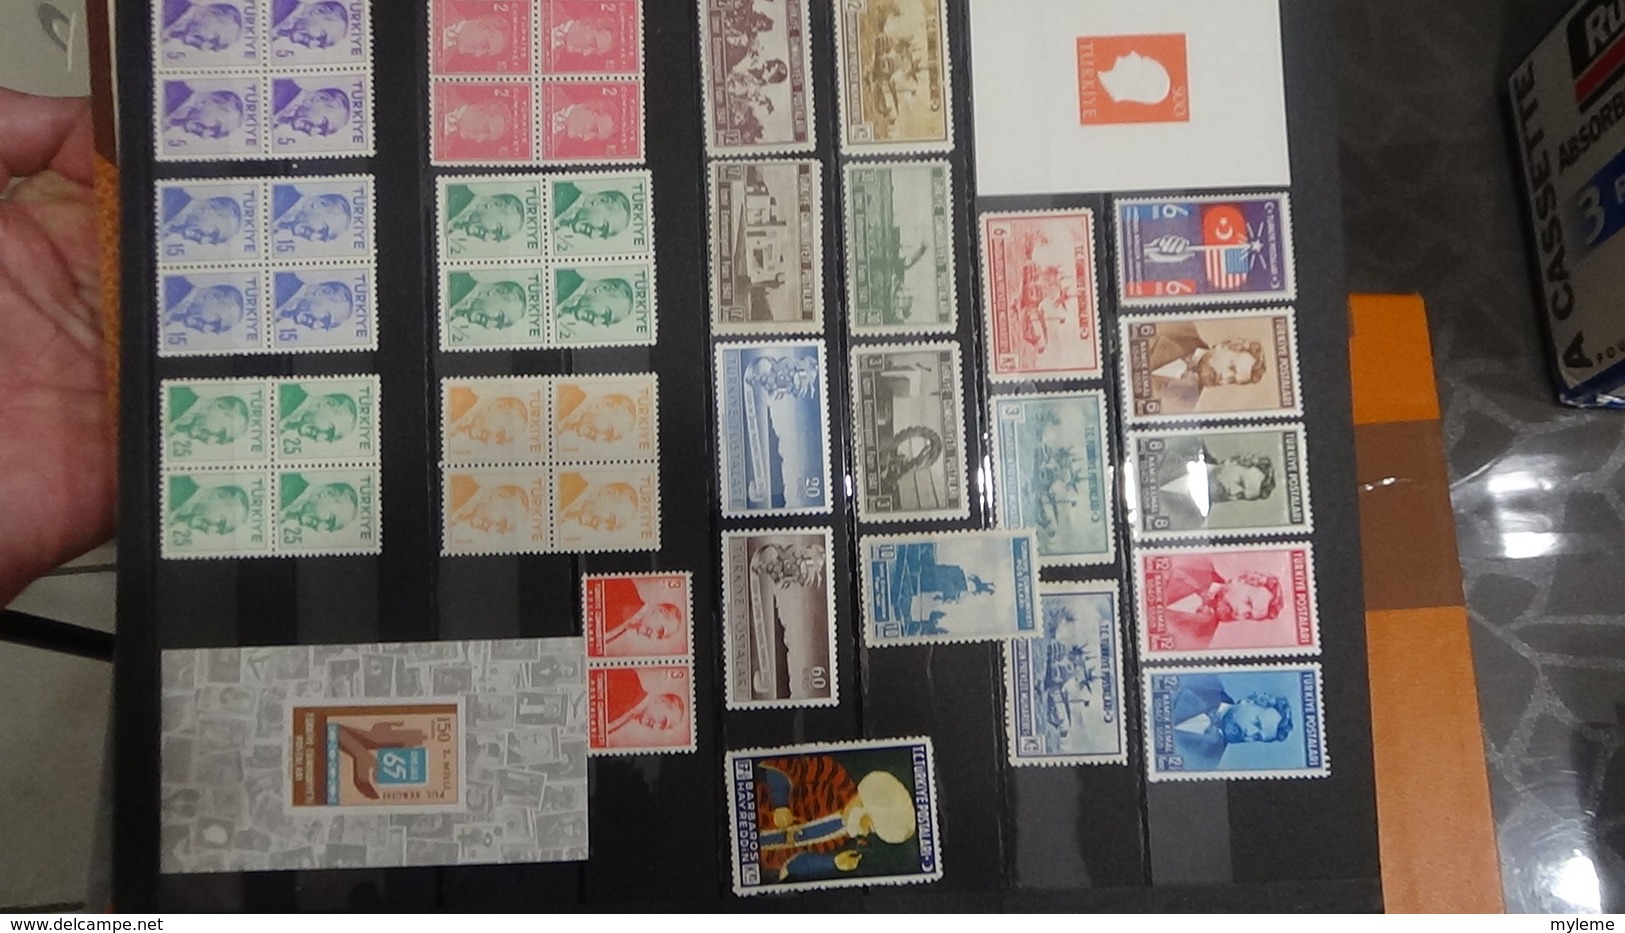 Collection de TURQUIE timbres et blocs **.  Très sympa !!!